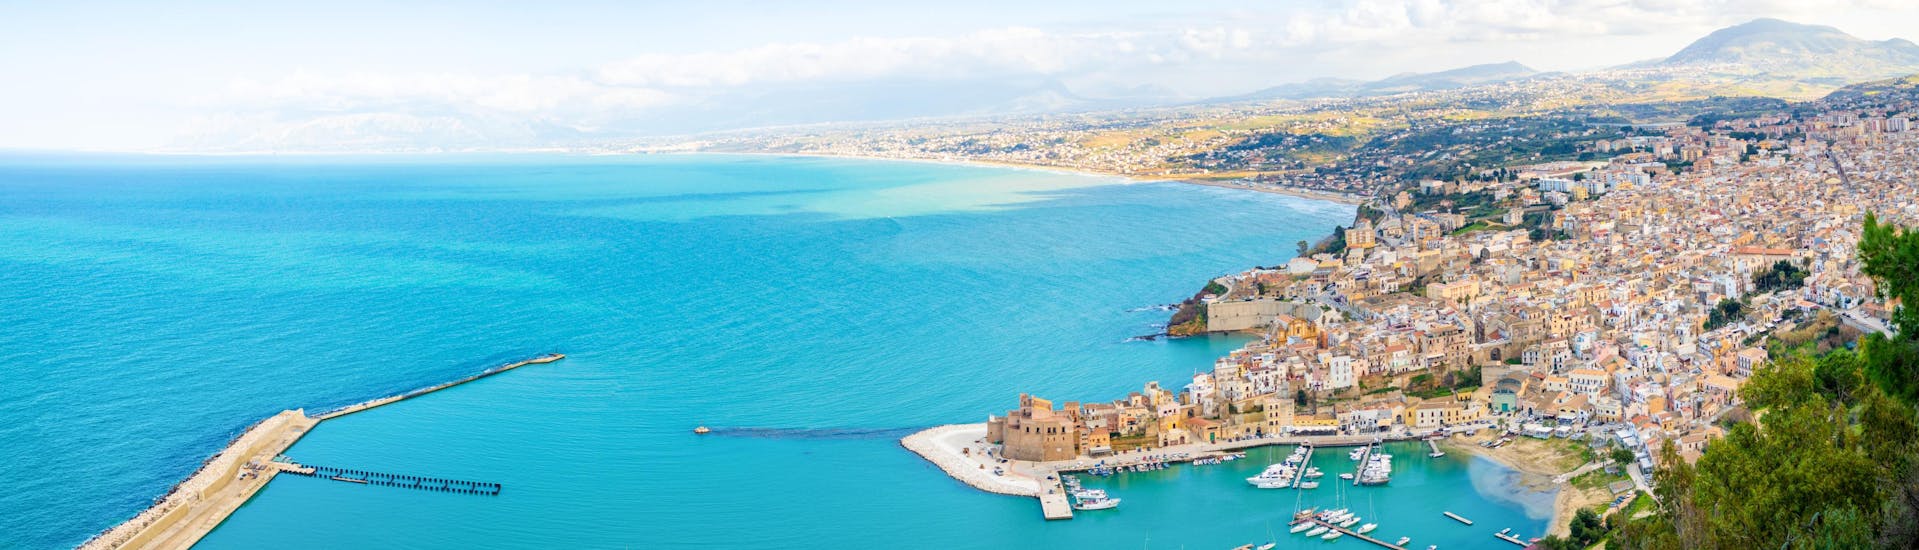 Luftaufnahme von Castellammare del Golfo, einem beliebten Ausgangspunkt für Bootstouren in Sizilien.